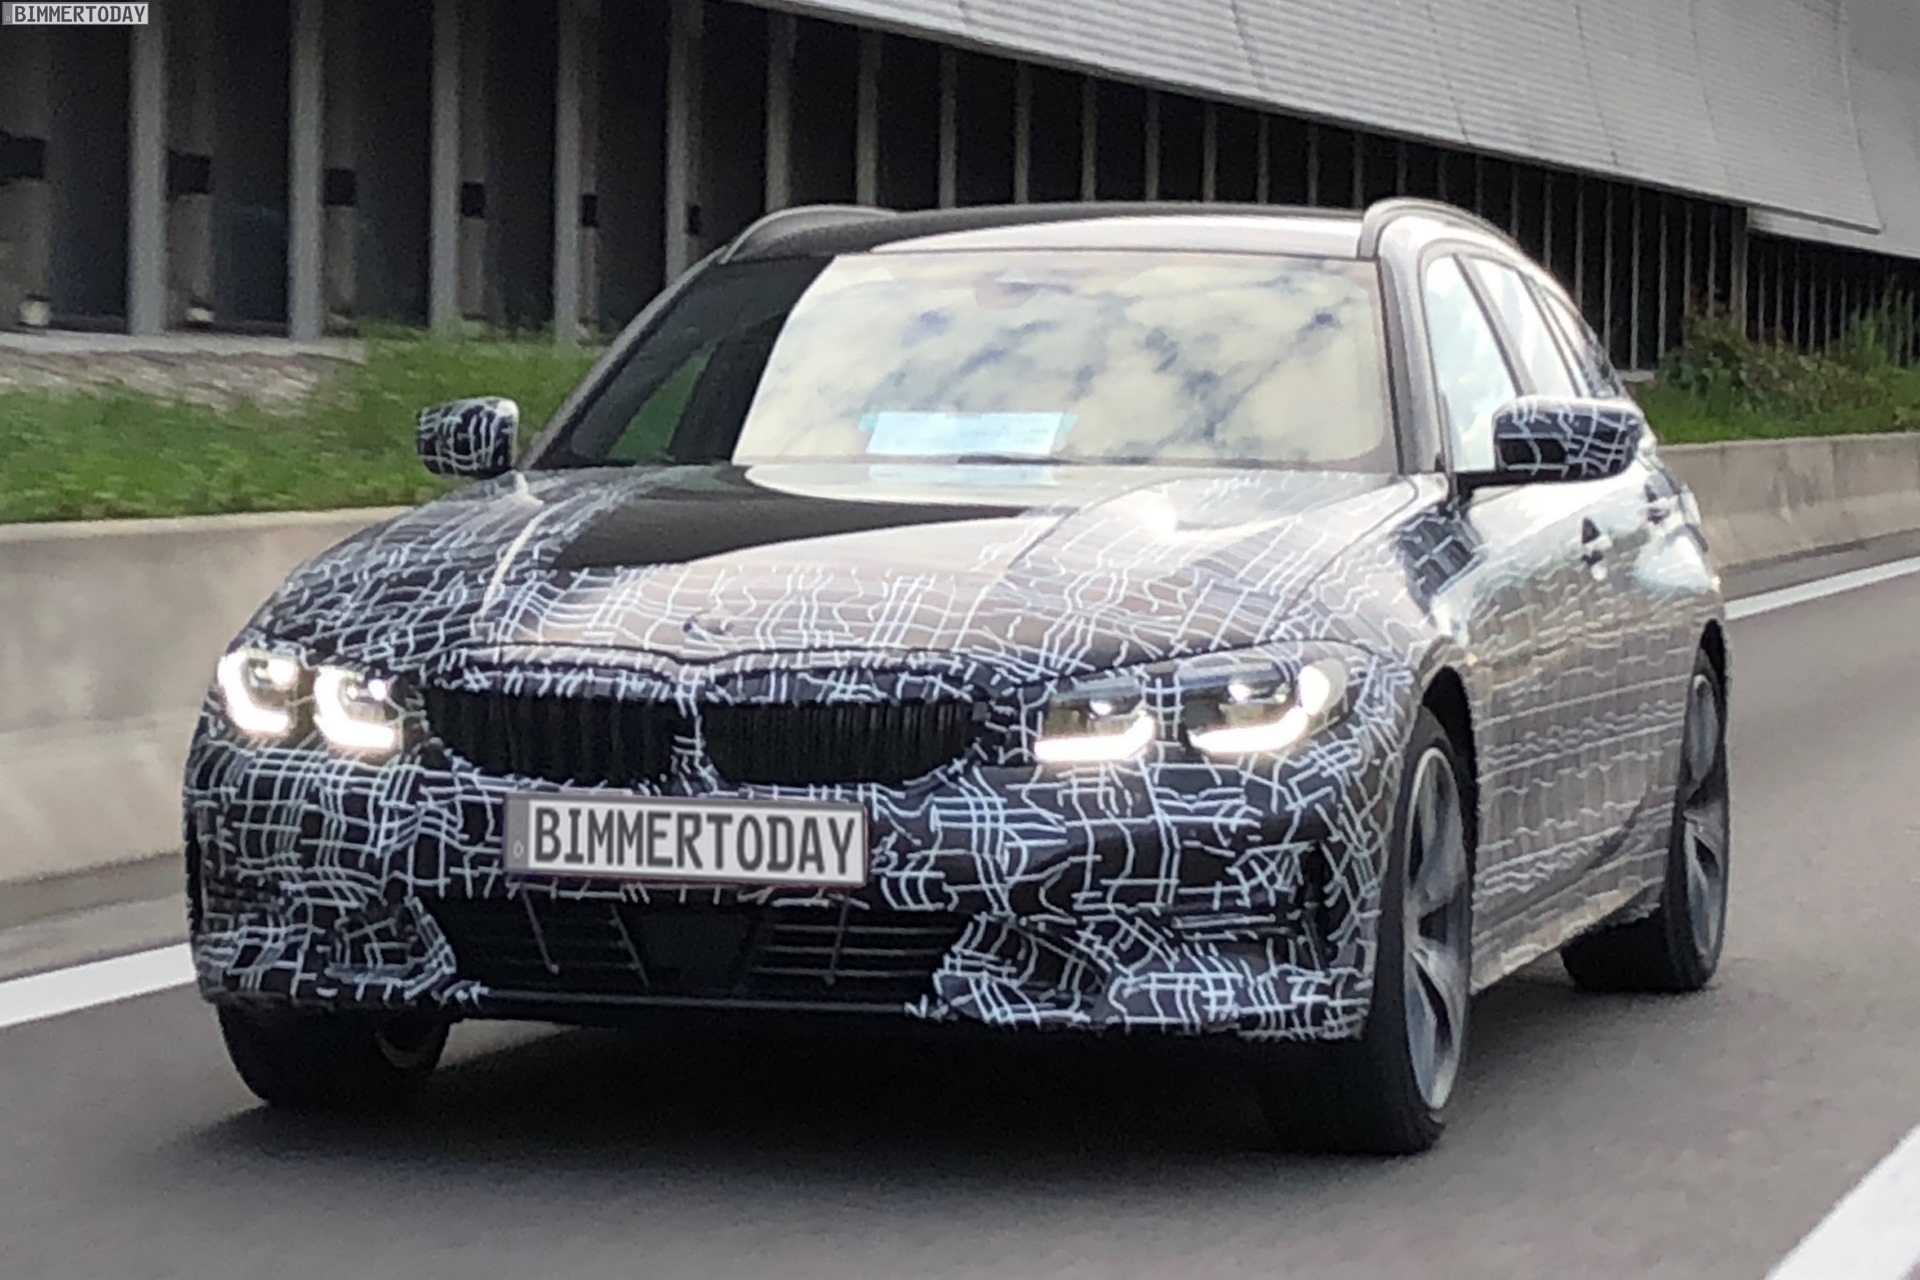 2019 BMW 3er Touring G21 spy photos 01